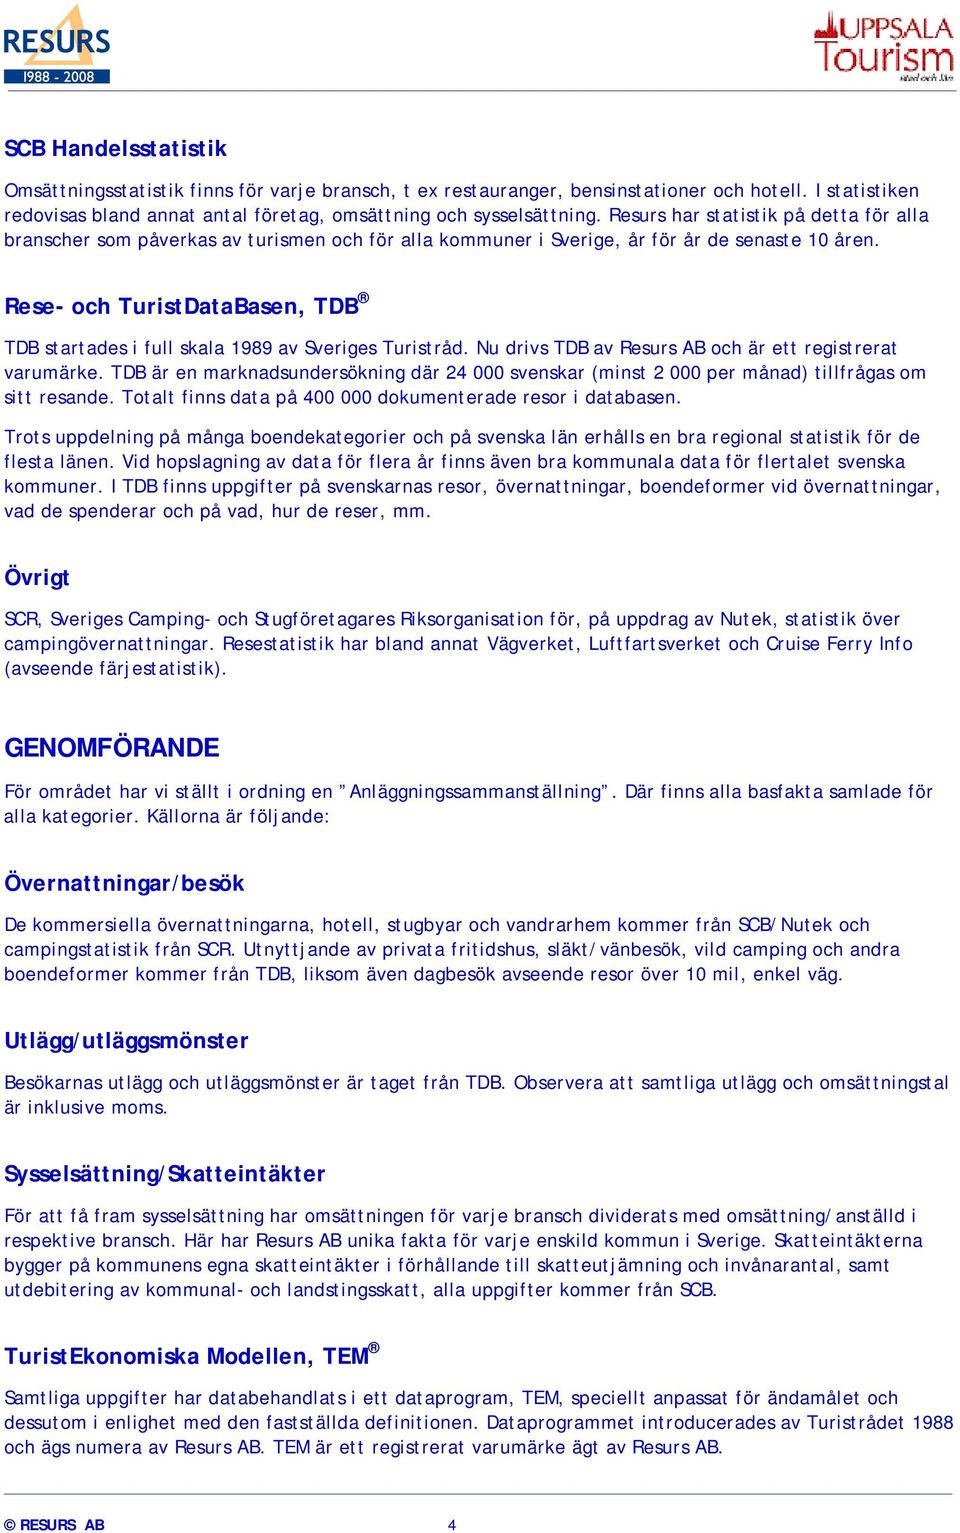 Rese- och TuristDataBasen, TDB TDB startades i full skala 1989 av Sveriges Turistråd. Nu drivs TDB av Resurs AB och är ett registrerat varumärke.